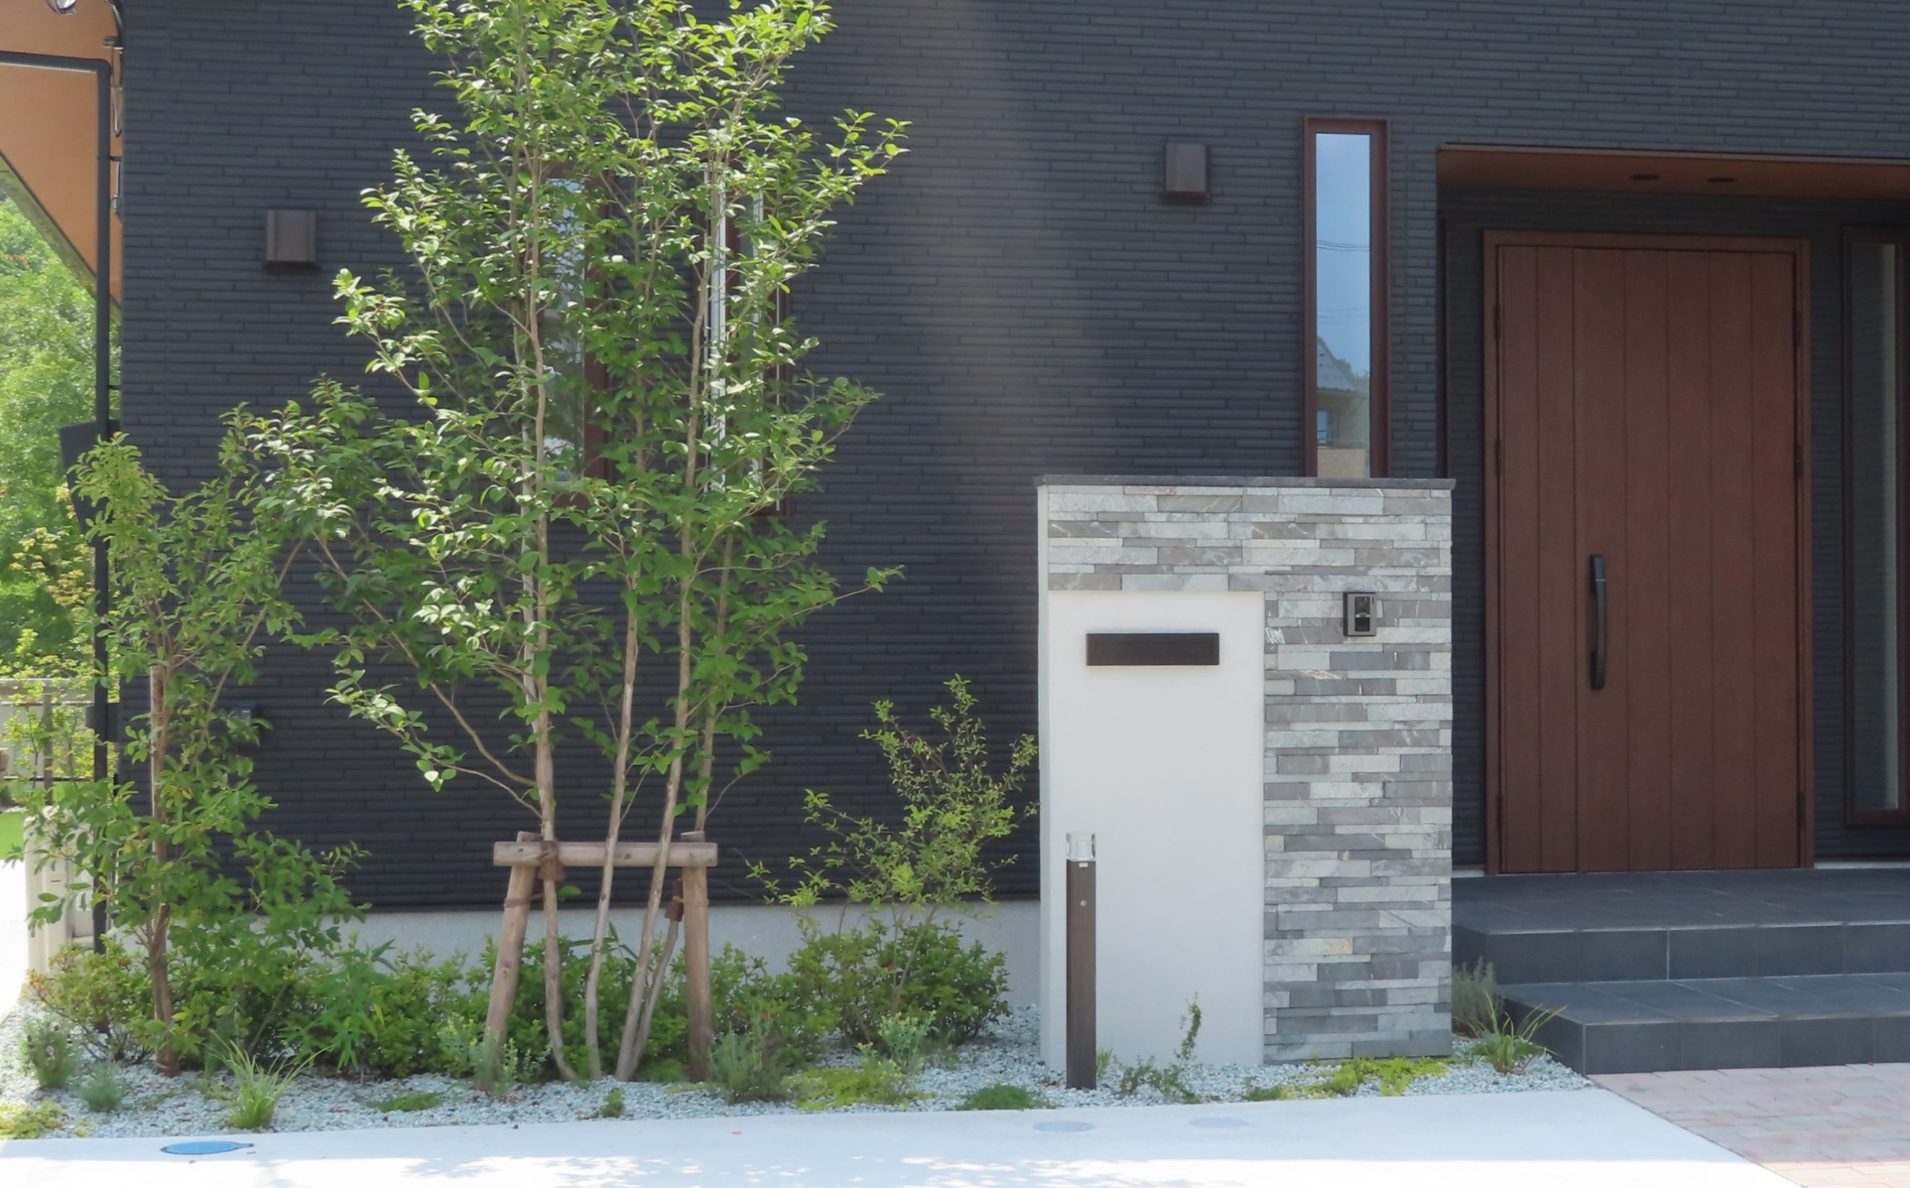 ブラックの外壁にシンボルツリーが映える正面玄関 仙台の外構工事 エクステリア お庭のリフォーム 泉ホームイング